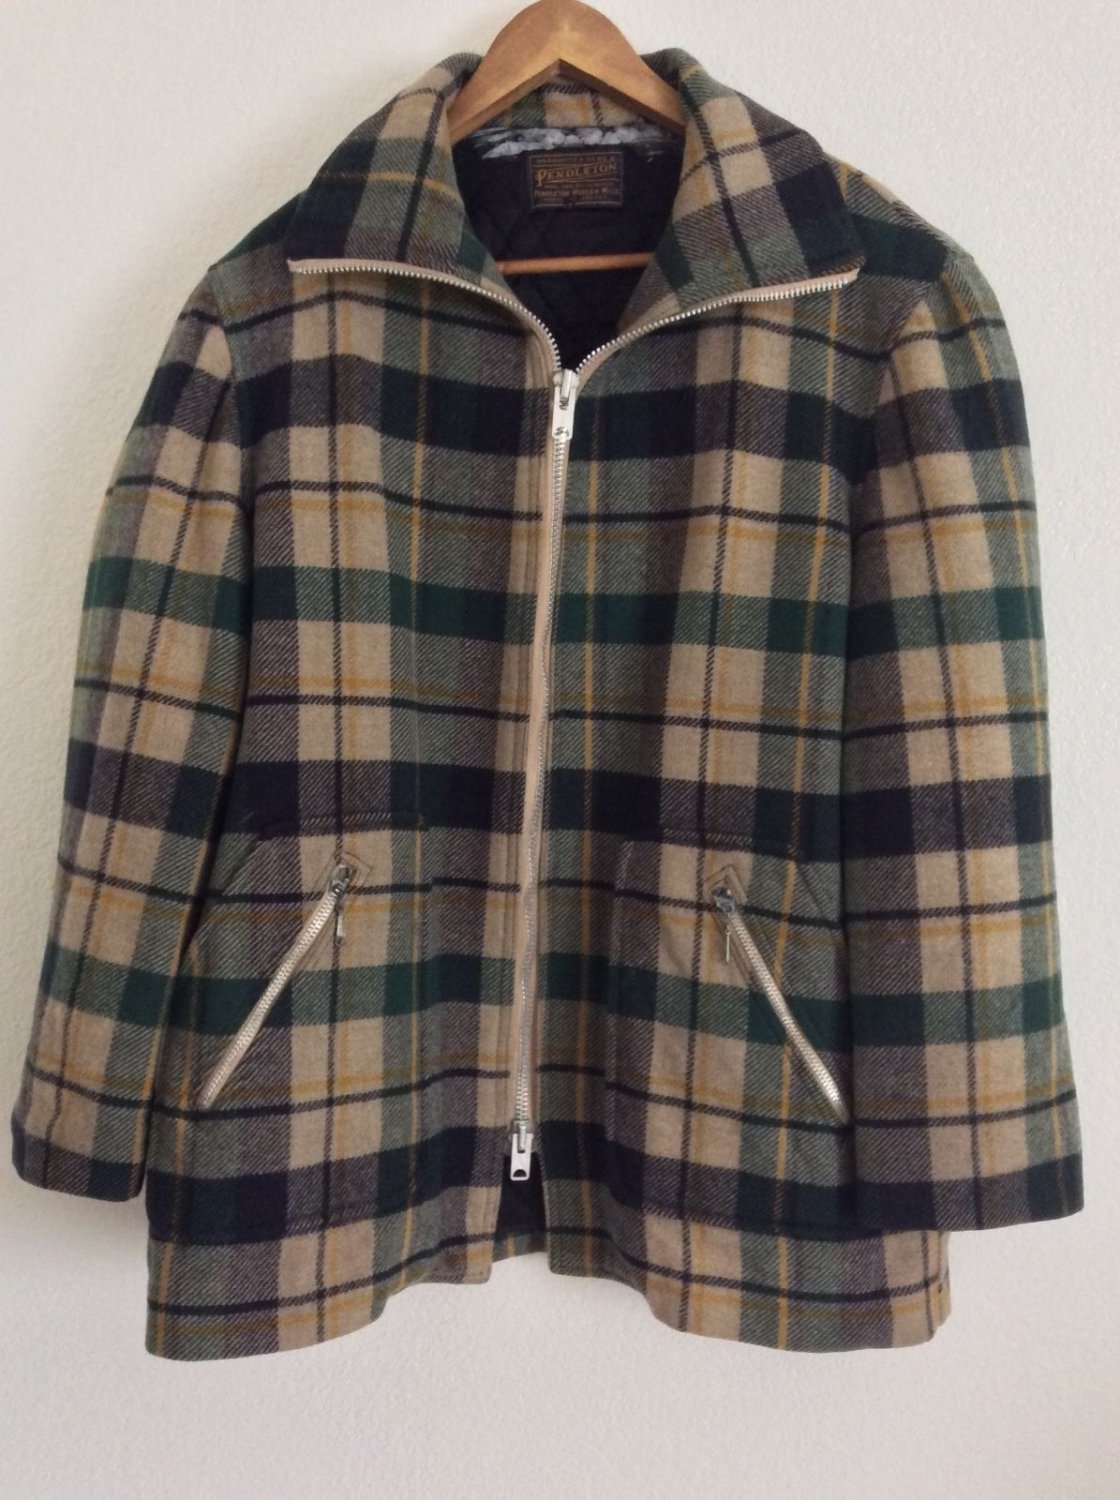 Vintage 1970's Plaid Pendleton Wool Hunting Jacket Lumberjack Coat Unisex